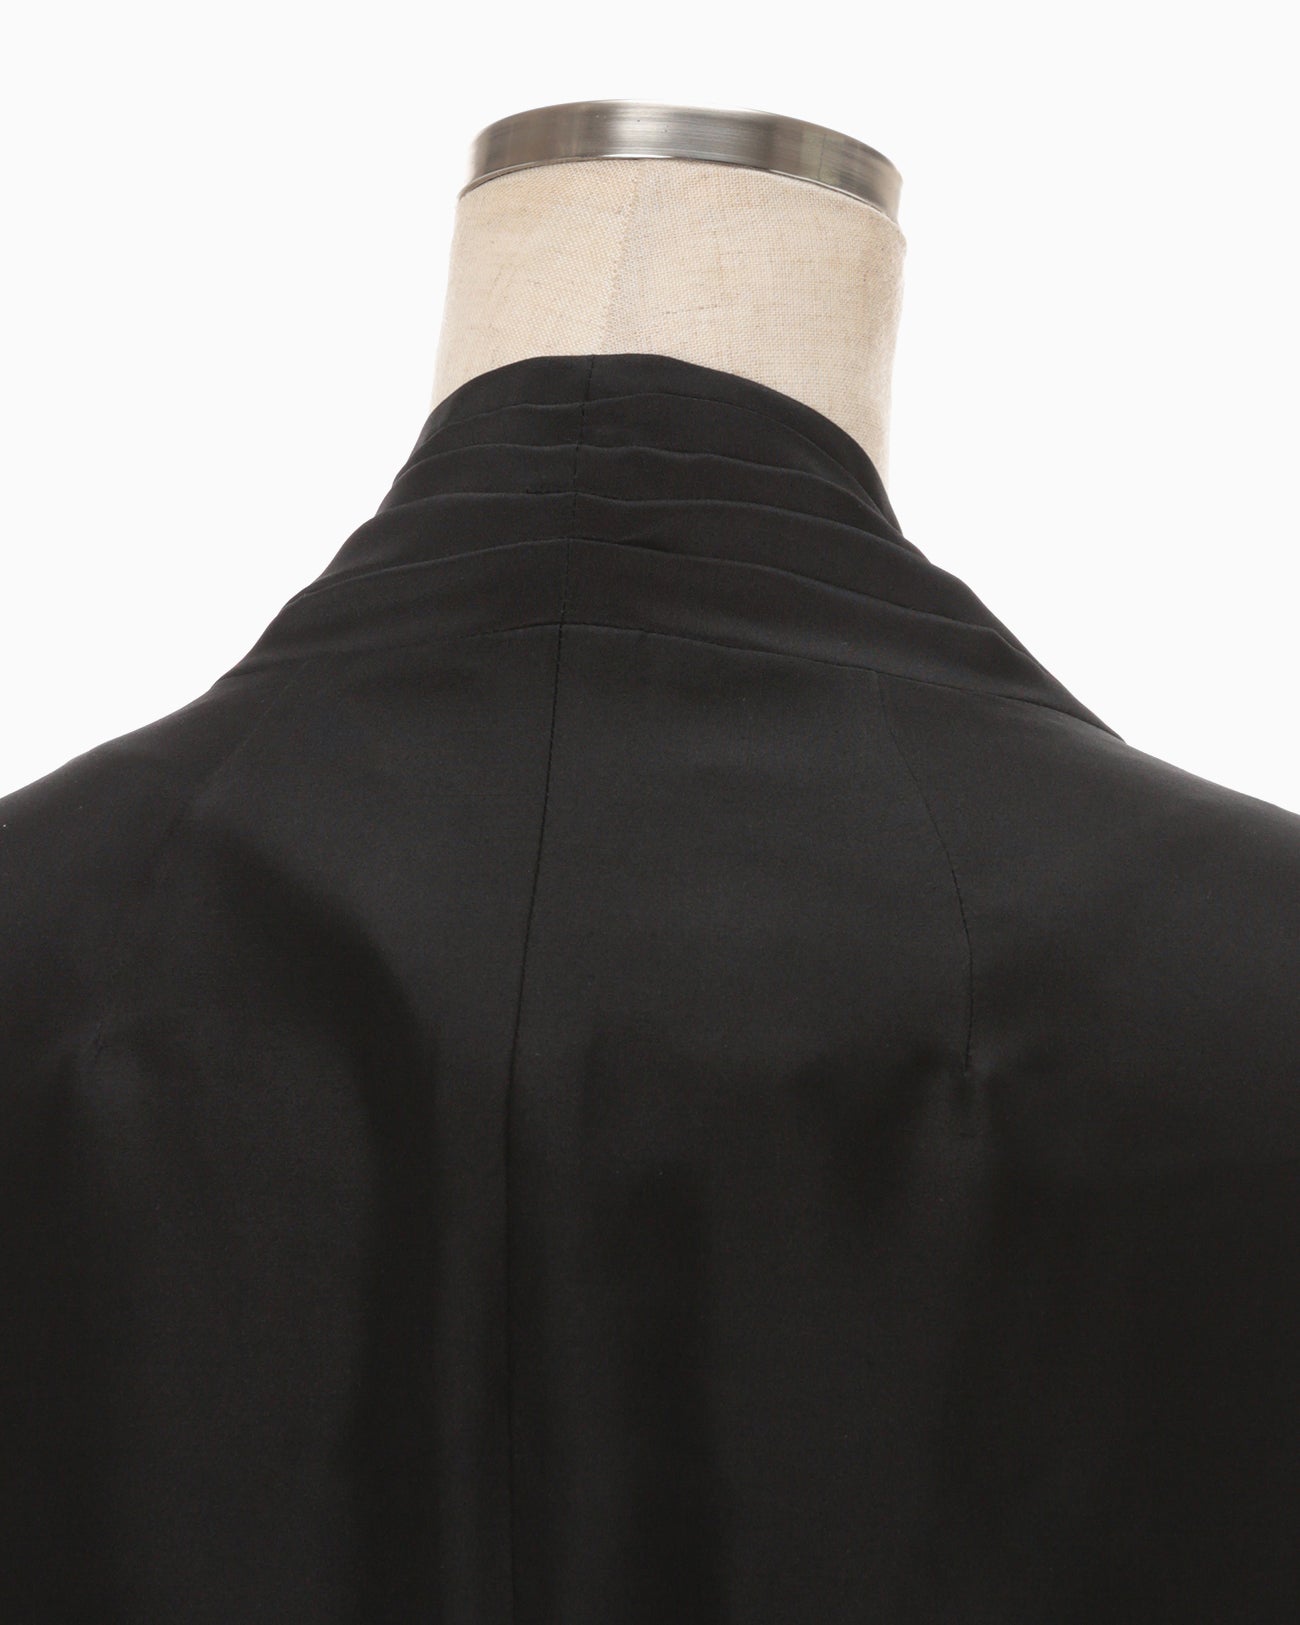 Silk Habutae Double Breasted Jacket - black